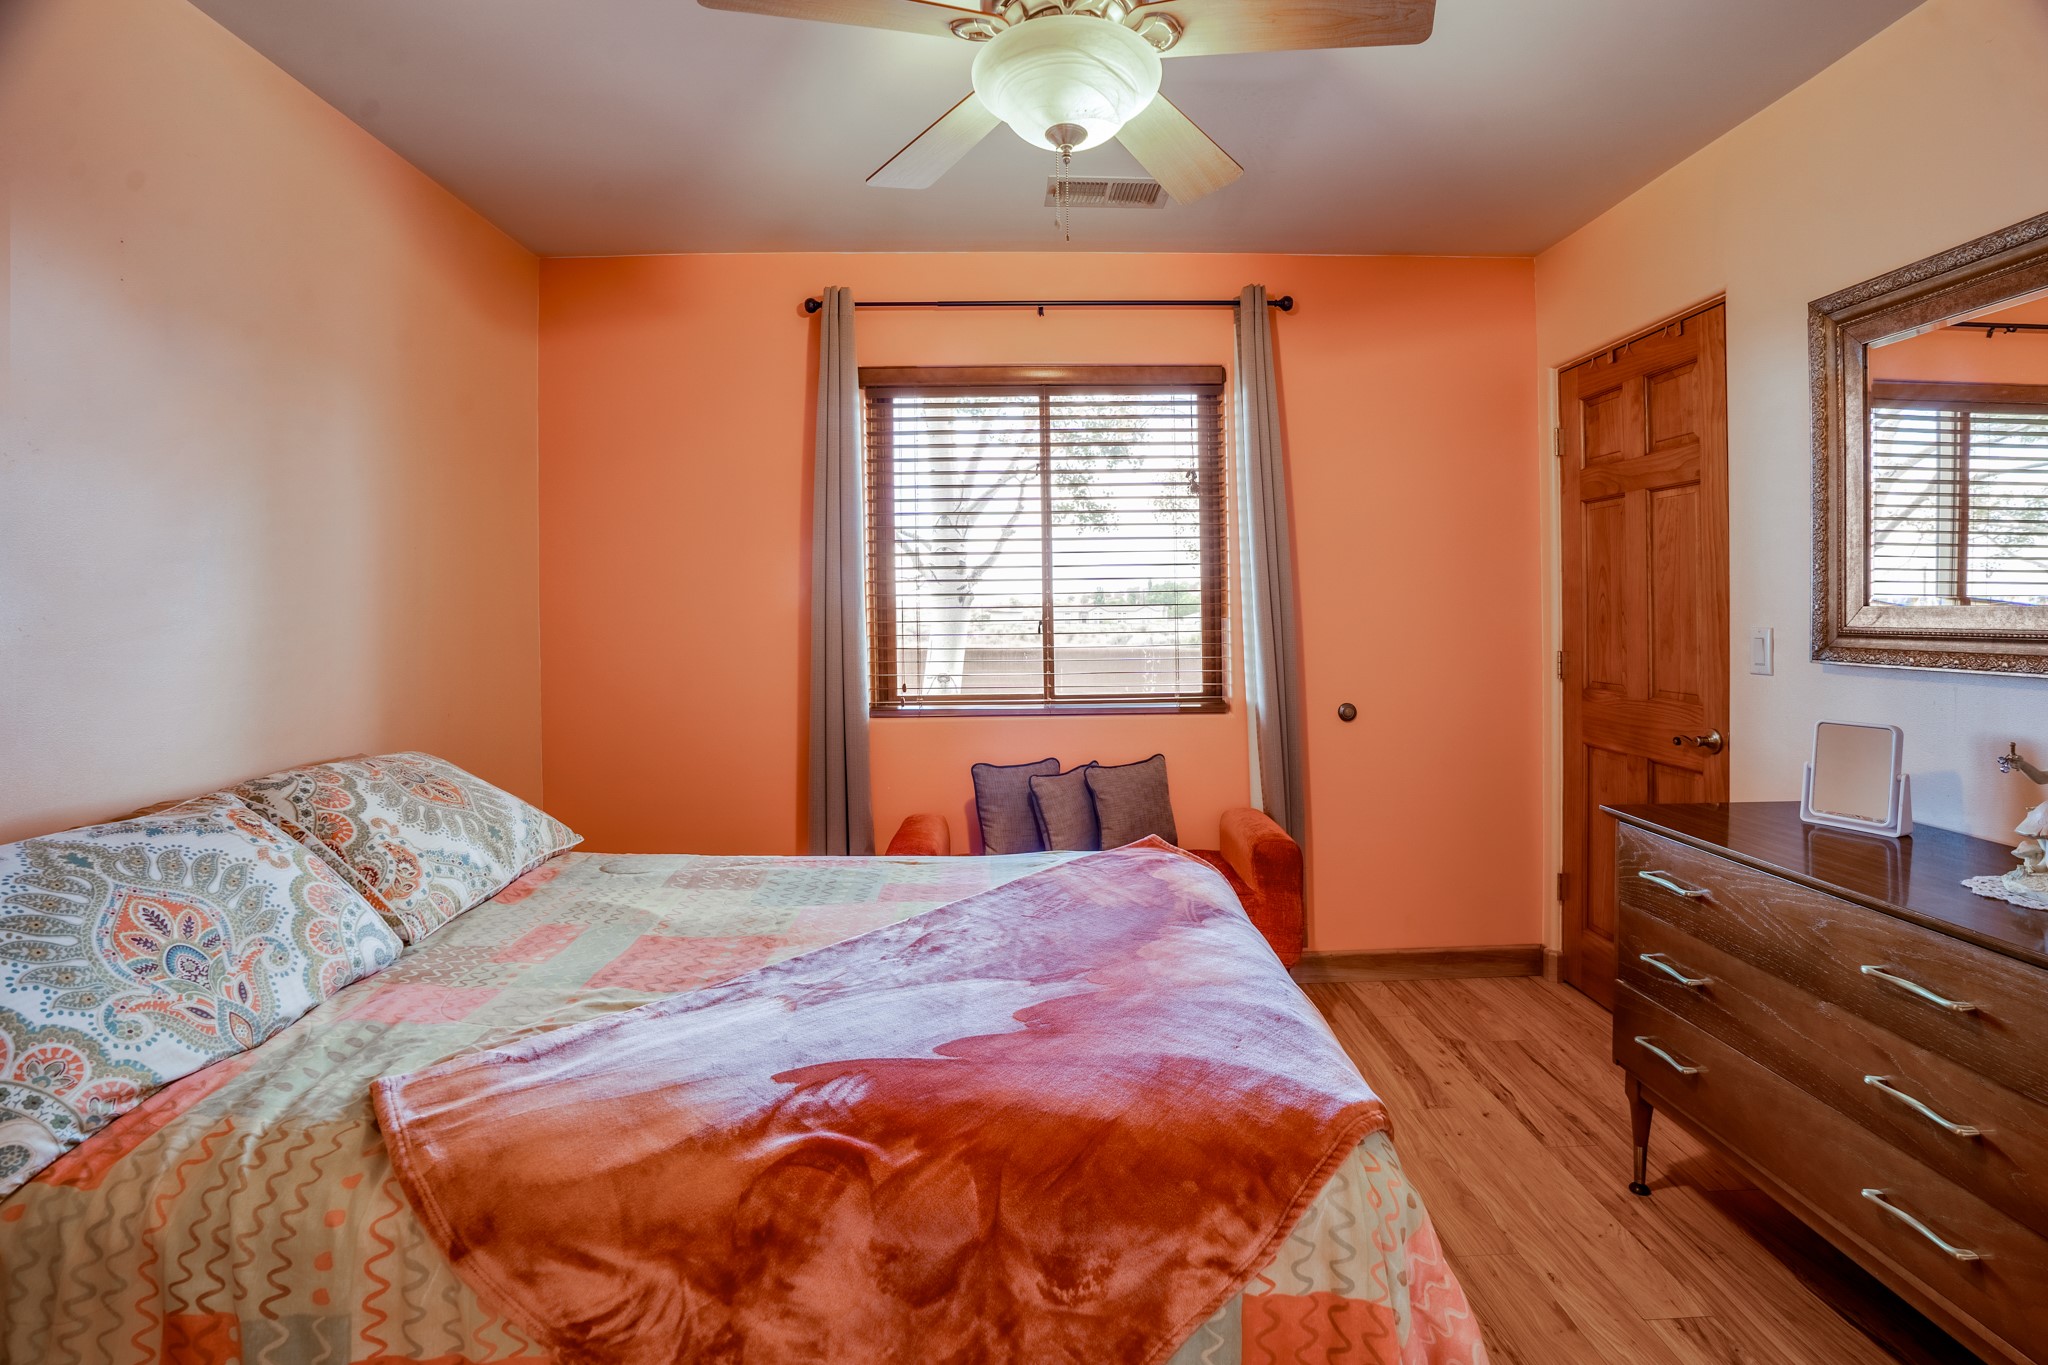 30 Tierra Hermosa B, Santa Fe, New Mexico 87507, 4 Bedrooms Bedrooms, ,3 BathroomsBathrooms,Residential,For Sale,30 Tierra Hermosa B,202340480